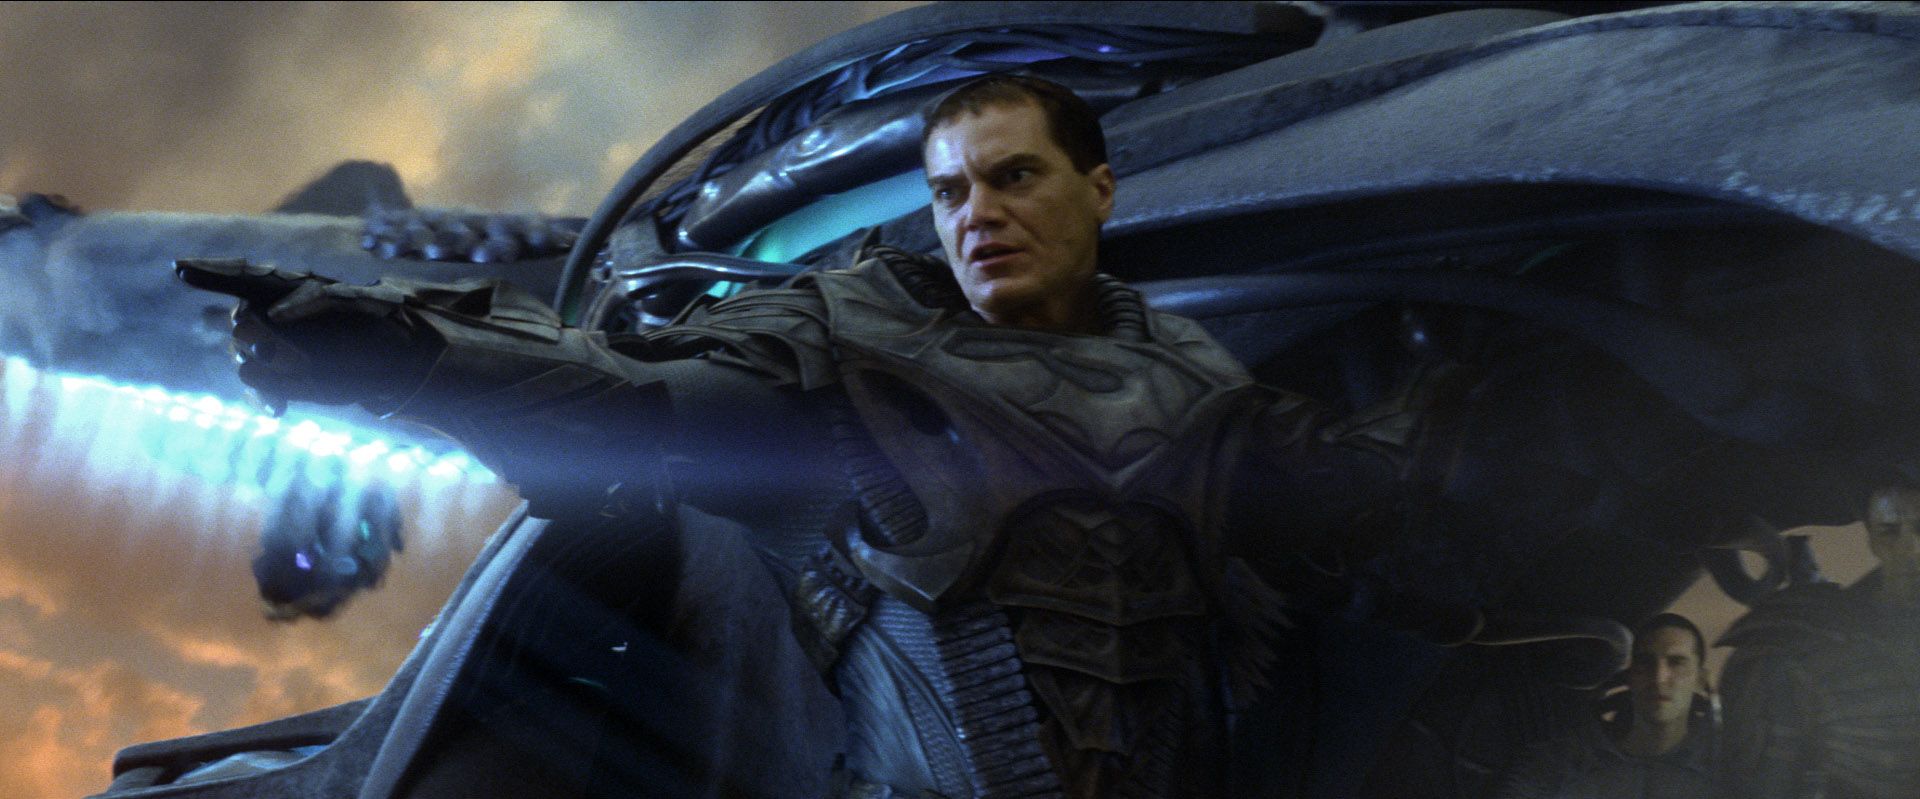 General Zod in Man of Steel